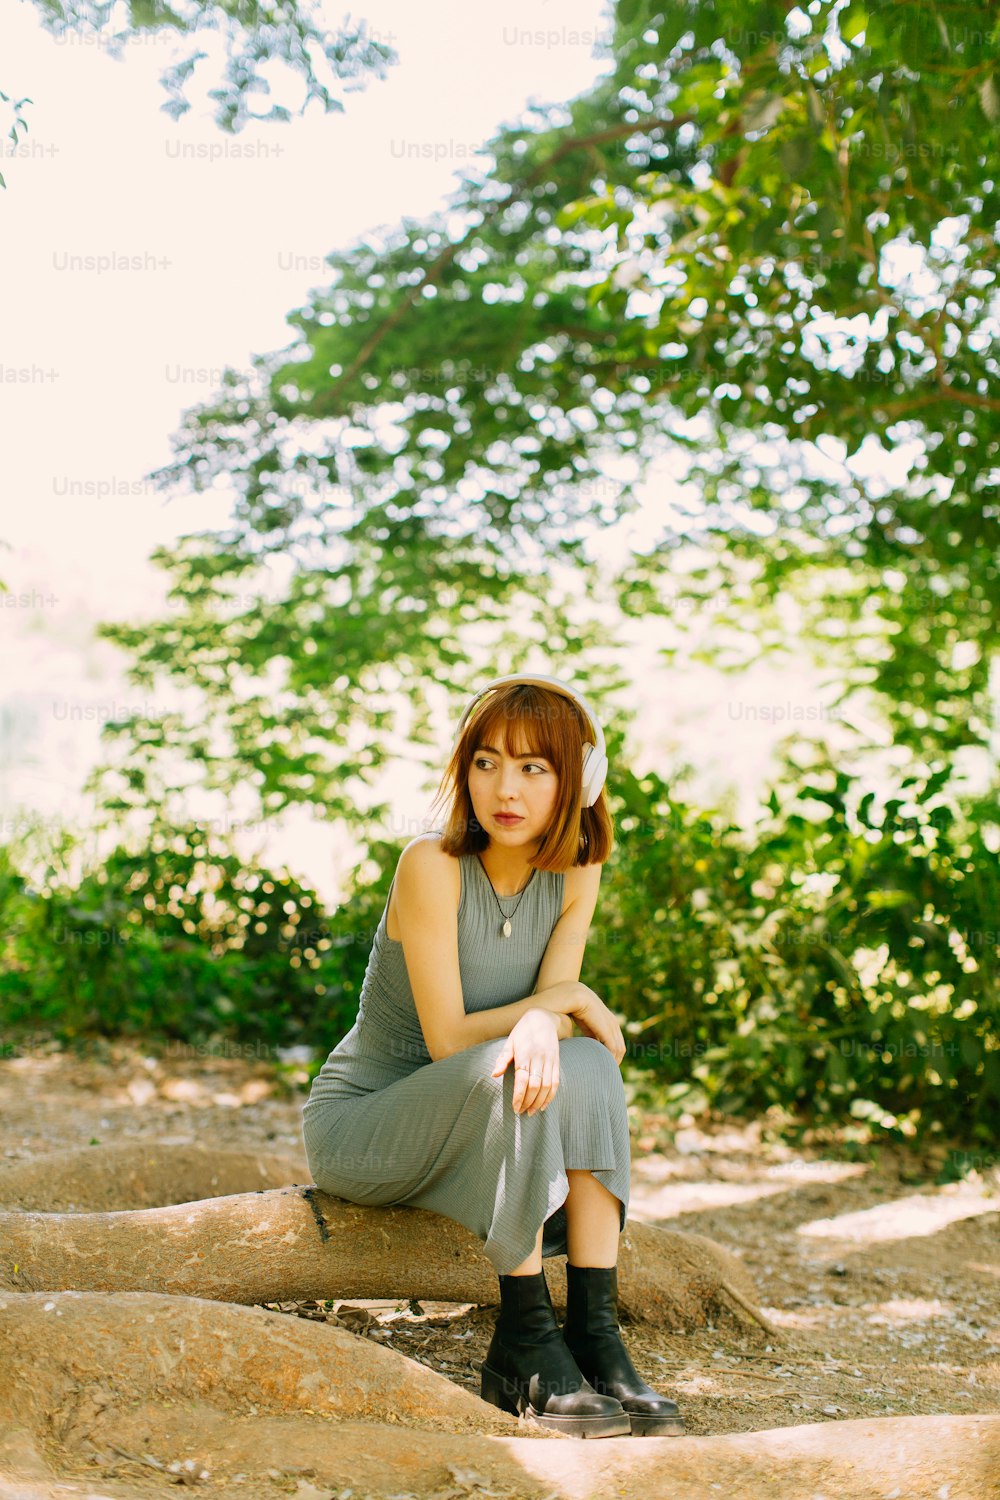 Una mujer sentada en una roca en un bosque